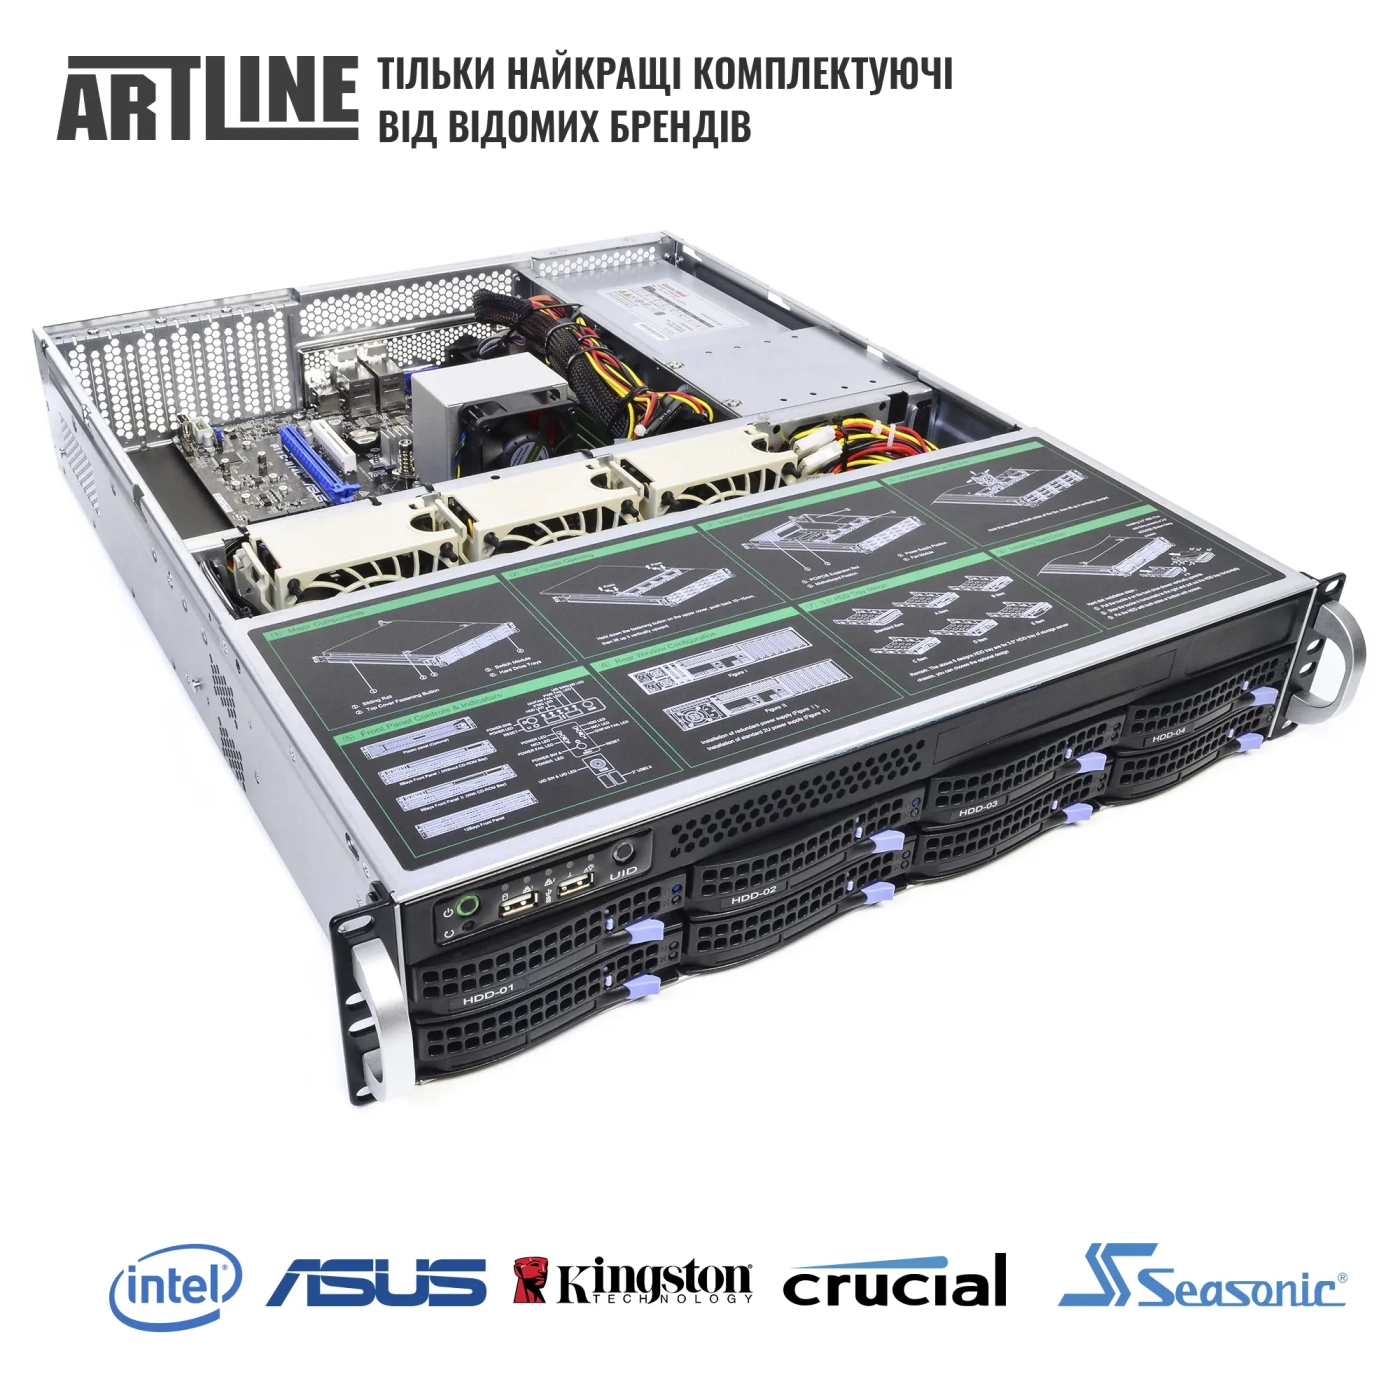 Купить Сервер ARTLINE Business R35 (R35v58) - фото 6